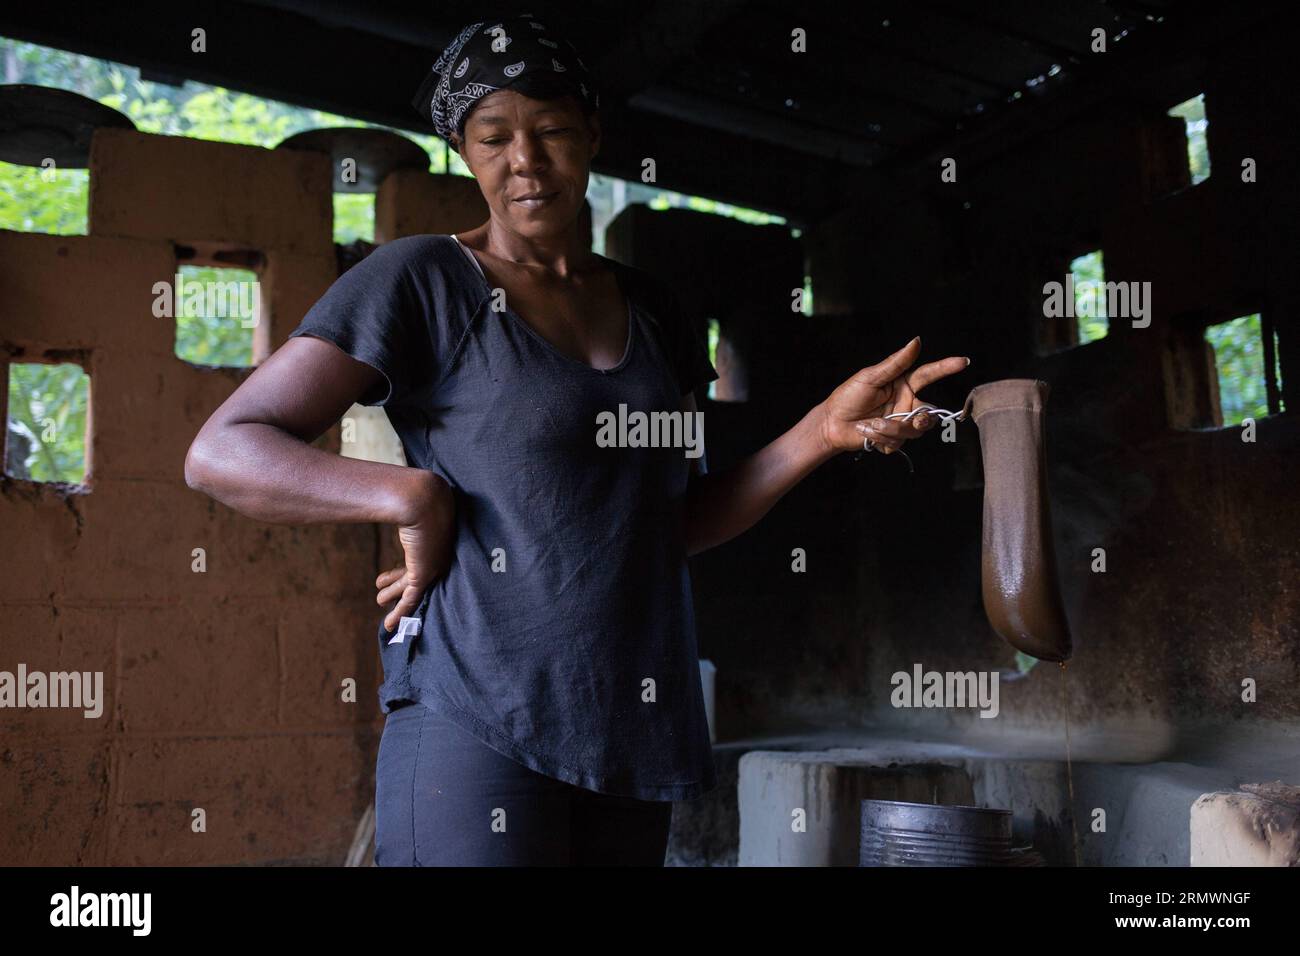 (141106) -- SAN CRISTOBAL, -- une image prise le 29 octobre 2014 montre un travailleur journalier brassant du café de manière traditionnelle dans une ferme de la municipalité de Los Cacaos, à San Cristobal, en République dominicaine. La vie de 10 pour cent de la population dominicaine tourne autour de la production de café. Fran Afonso) RÉPUBLIQUE DOMINICAINE-SAN CRISTOBAL-AGRICULTURE-COFFEE e FRANxAFONSO PUBLICATIONxNOTxINxCHN San Cristobal image prise LE 29 2014 octobre montre un ouvrier de jour brassant du café de manière traditionnelle dans une ferme de la municipalité de Los Cacaos à San Cristobal République Dominicaine la vie de 10 pour cent des Dominicains Populati Banque D'Images